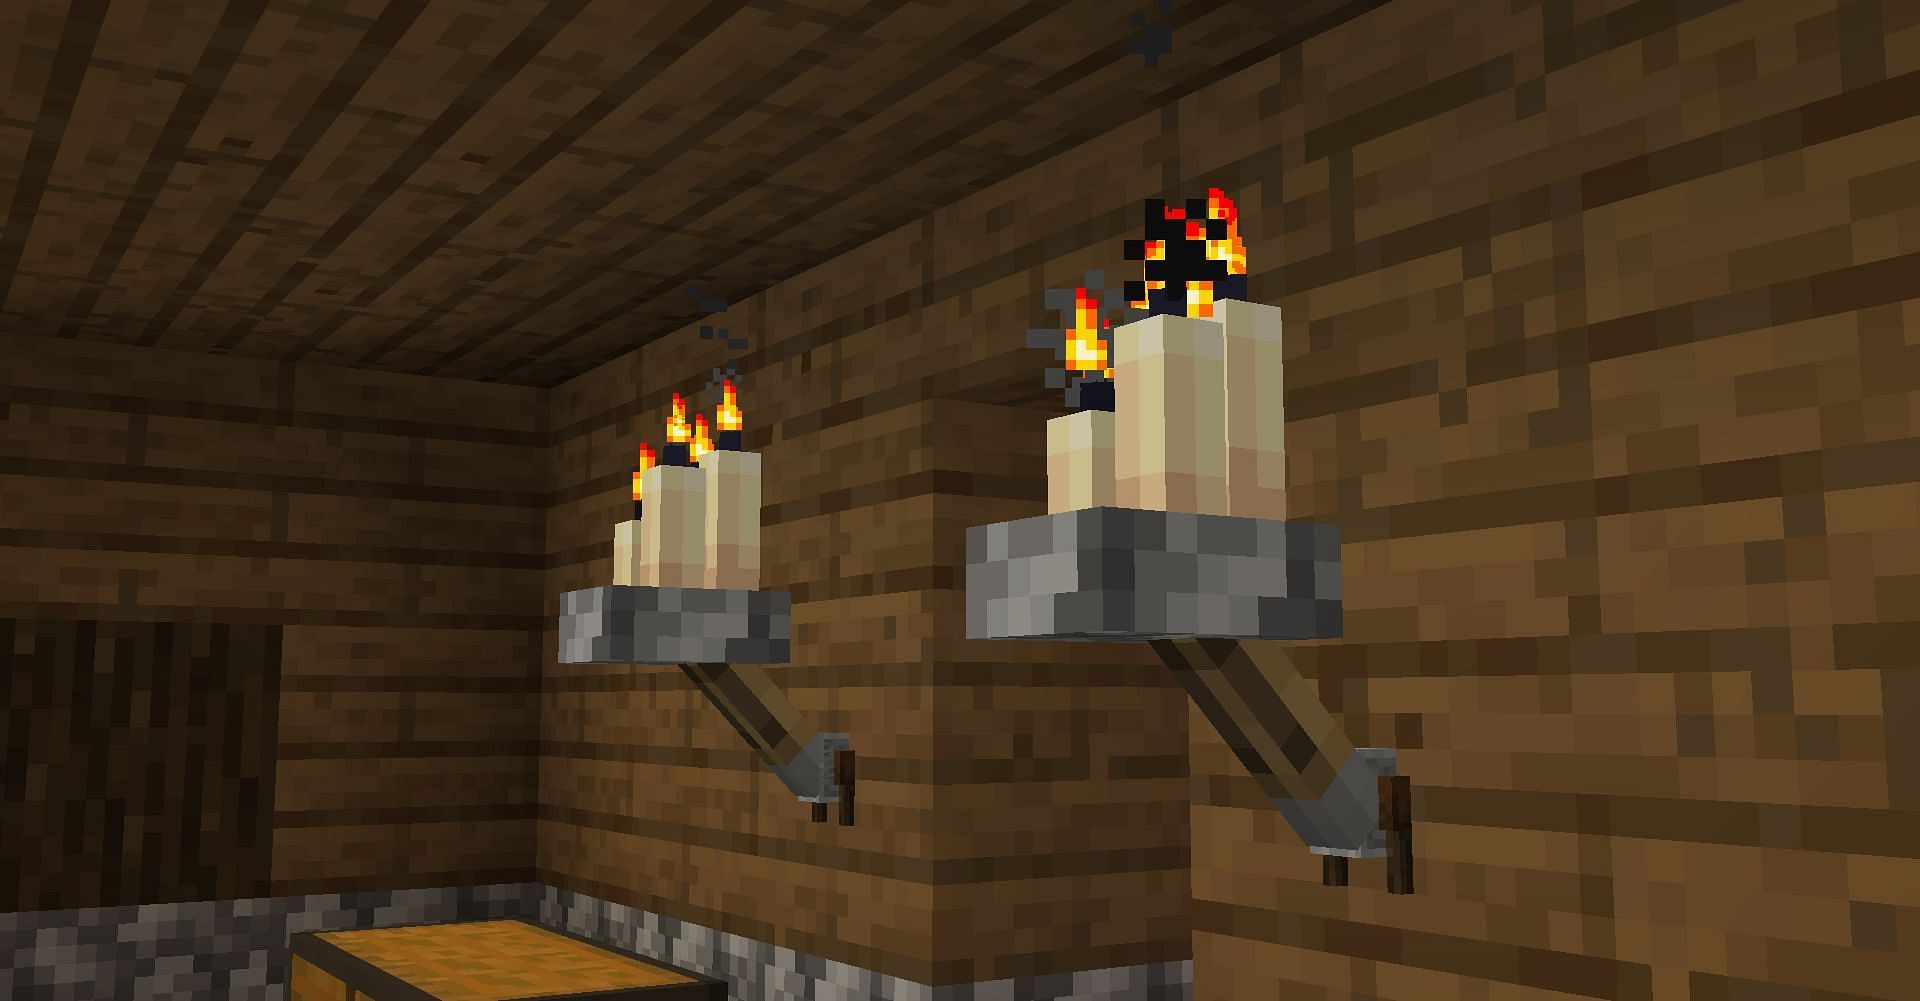 Candles in Minecraft Caves and Cliffs Part 2 (Image via Reddit u/skahlor1)